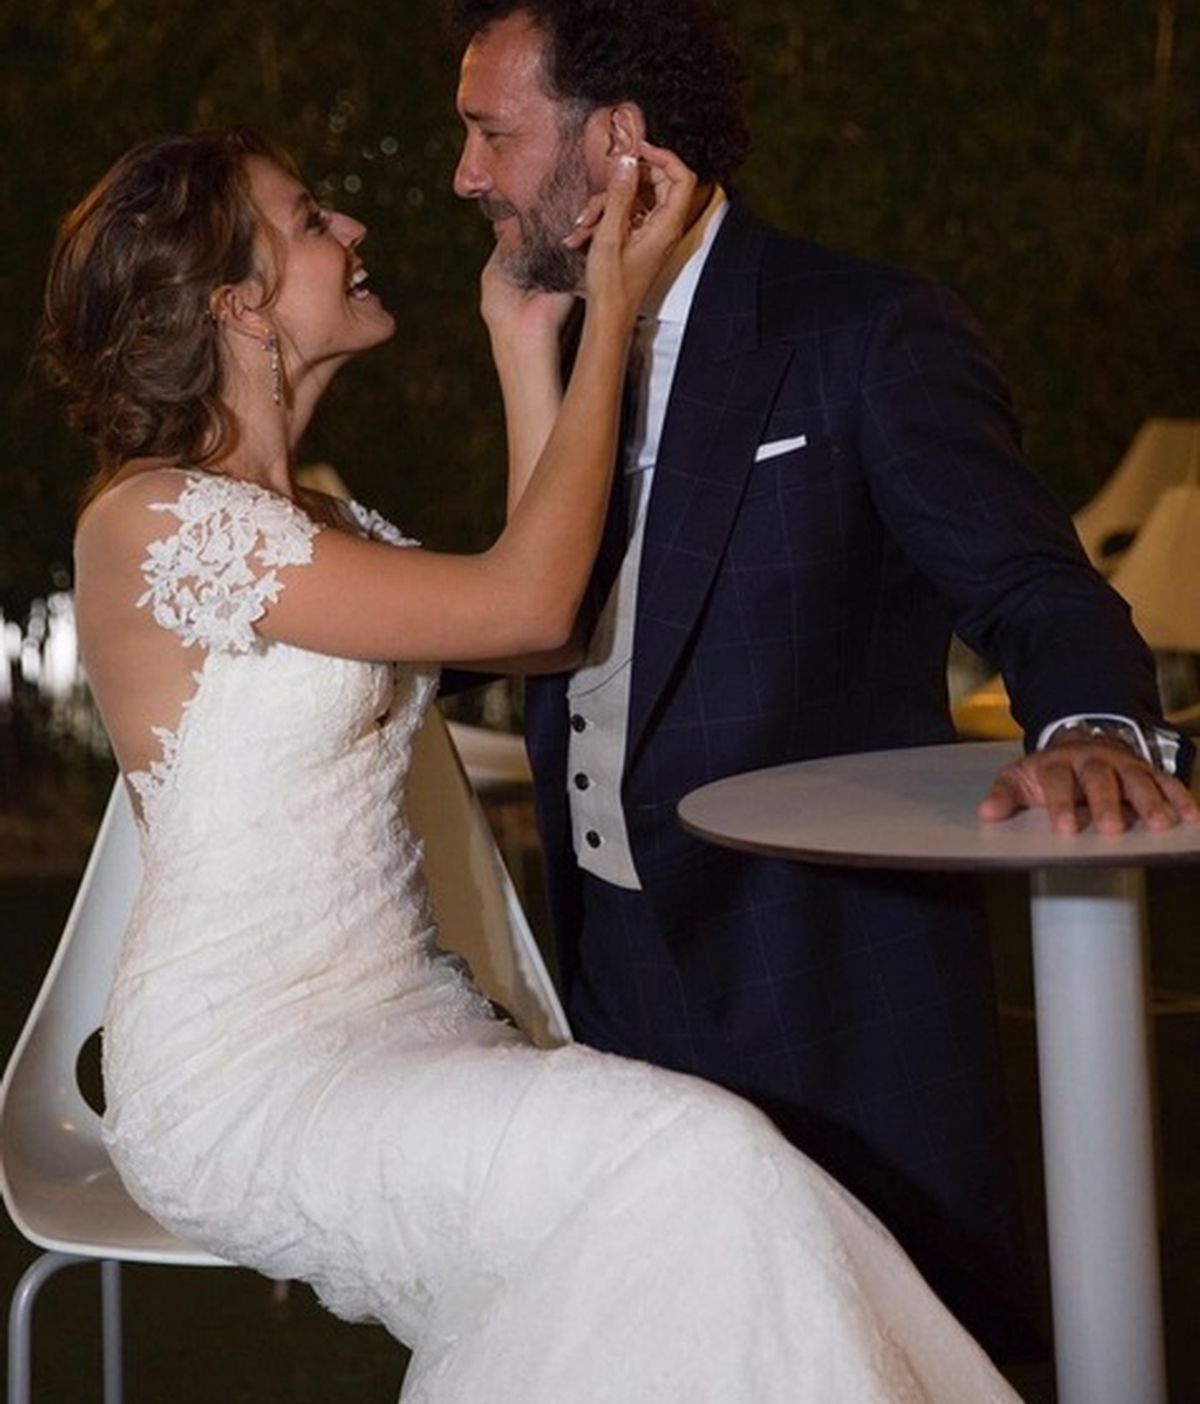 Imagen de la boda entre los actores José Luis García Pérez y Cristina Alarcón